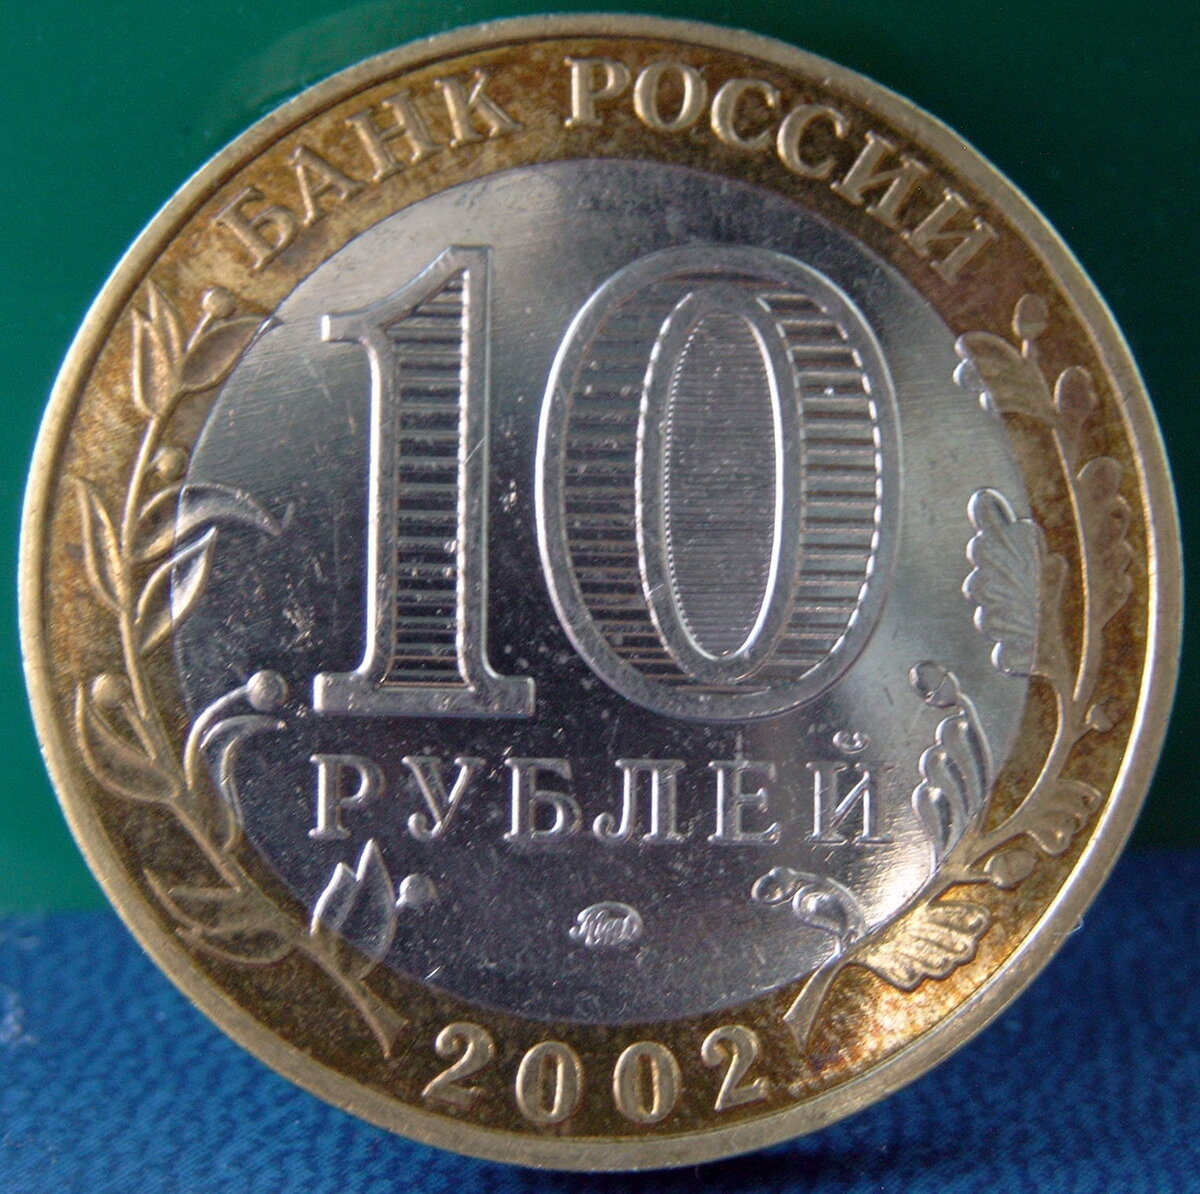 Дорогие юбилейные монеты 10 рублей. Монета 10 рублей. Монеты номиналом 10 рублей. Монета 10 рублей обычная. 10 Рублей юбилейные.